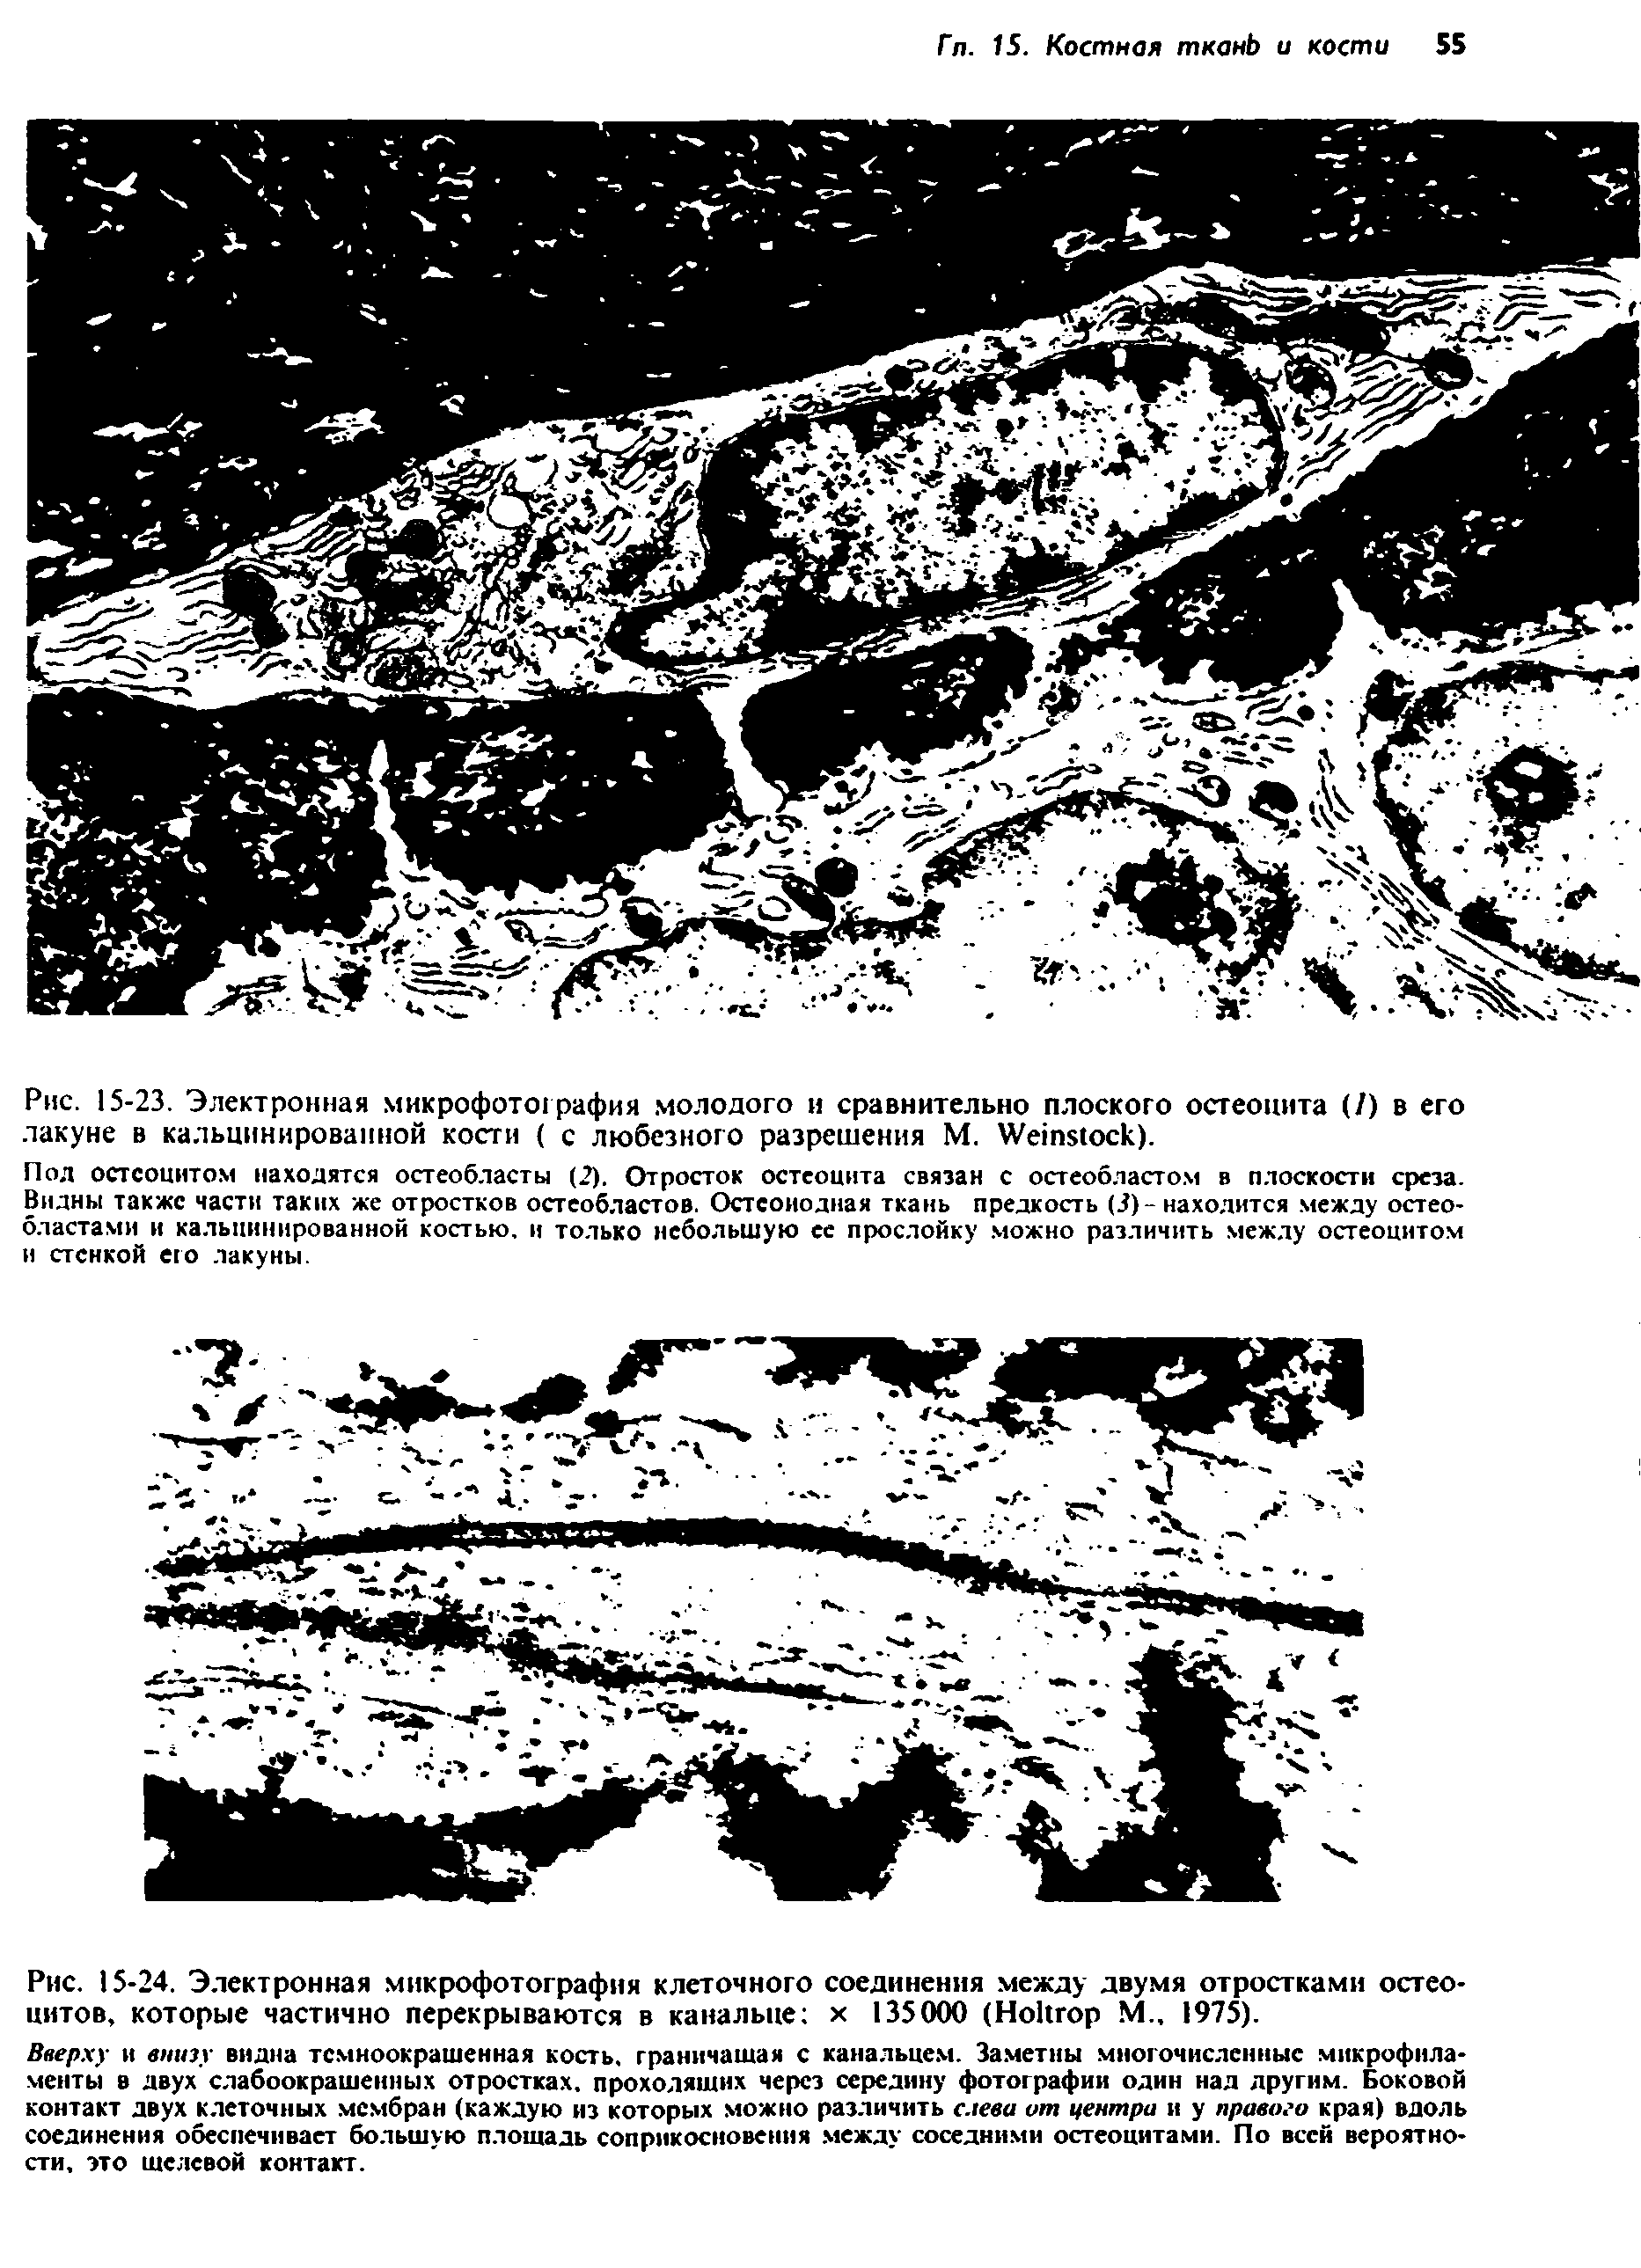 Рис. 15-24. Электронная микрофотография клеточного соединения между двумя отростками остео-цитов, которые частично перекрываются в канальце х 135000 (H М., 1975).